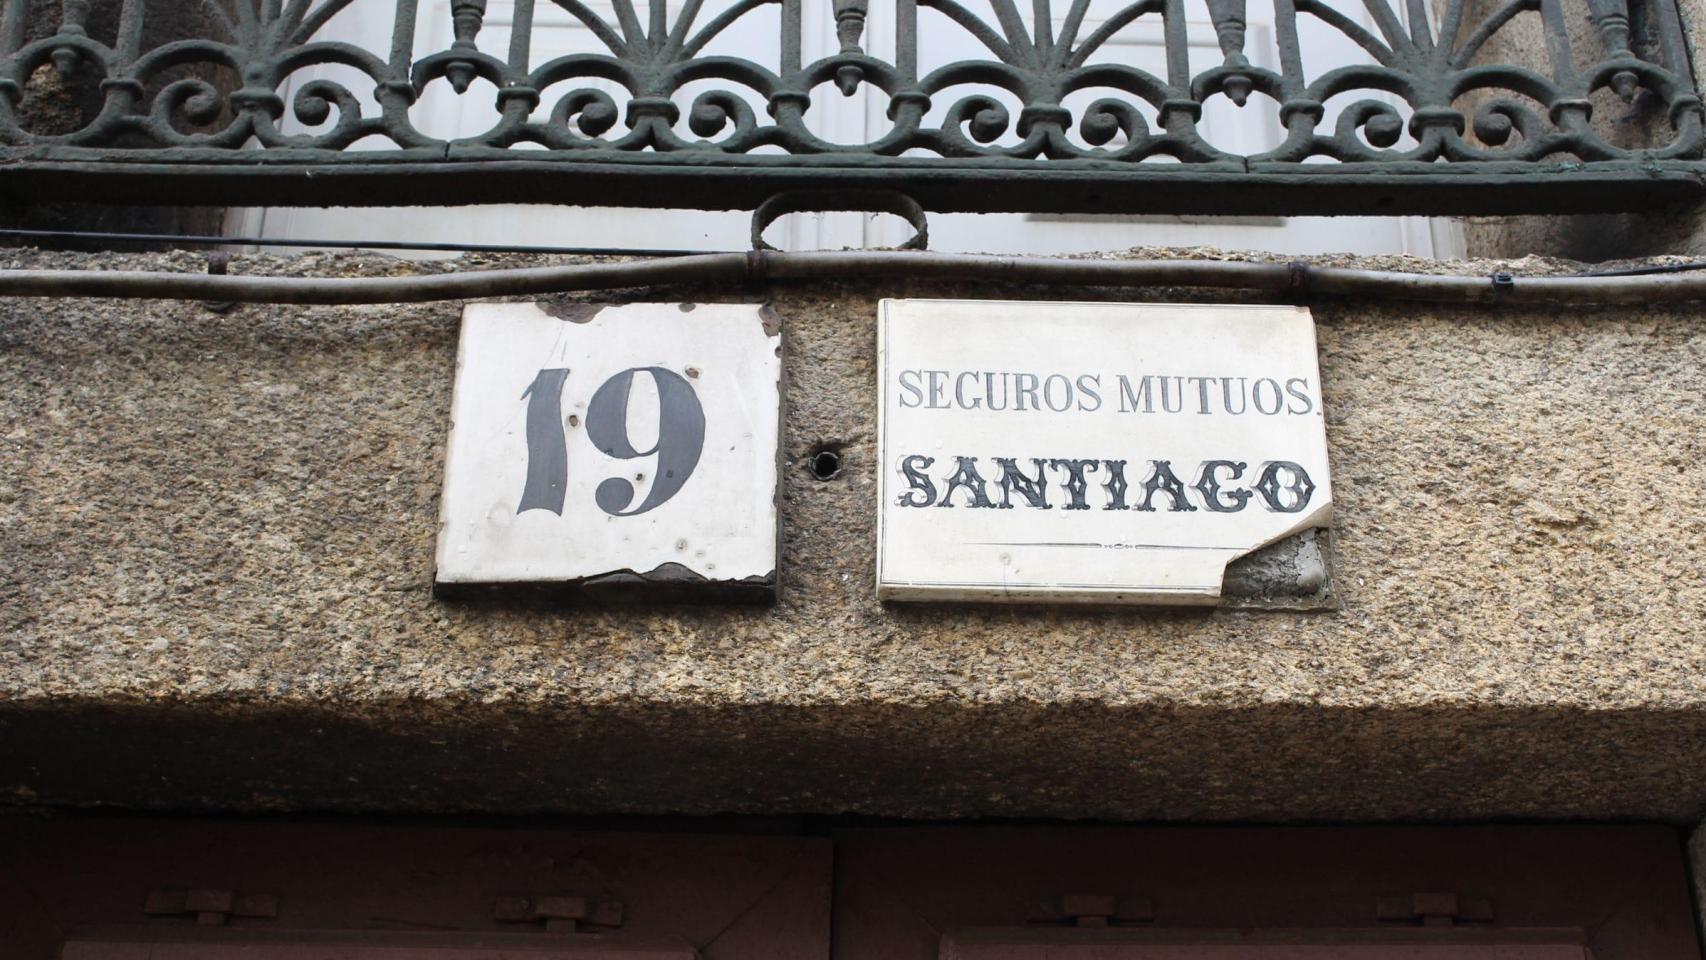 Una de las placas de Seguros Mutuos Santiago.